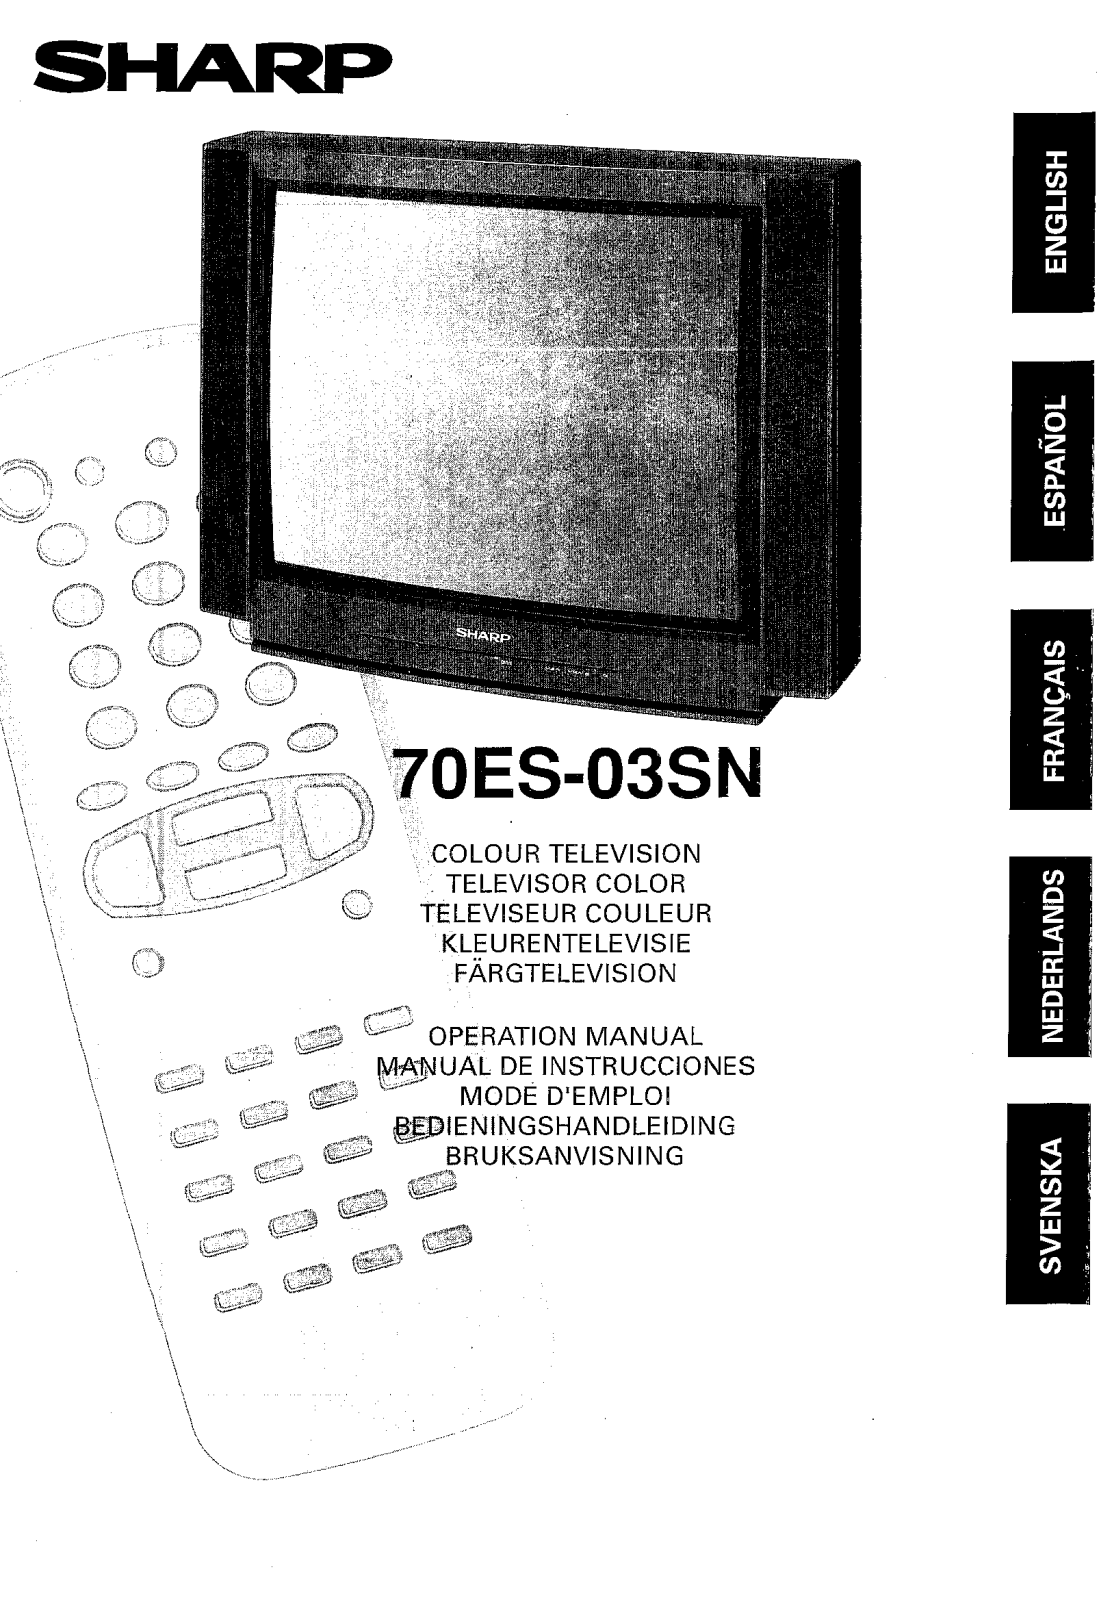 SHARP 70ES-03SN User Manual